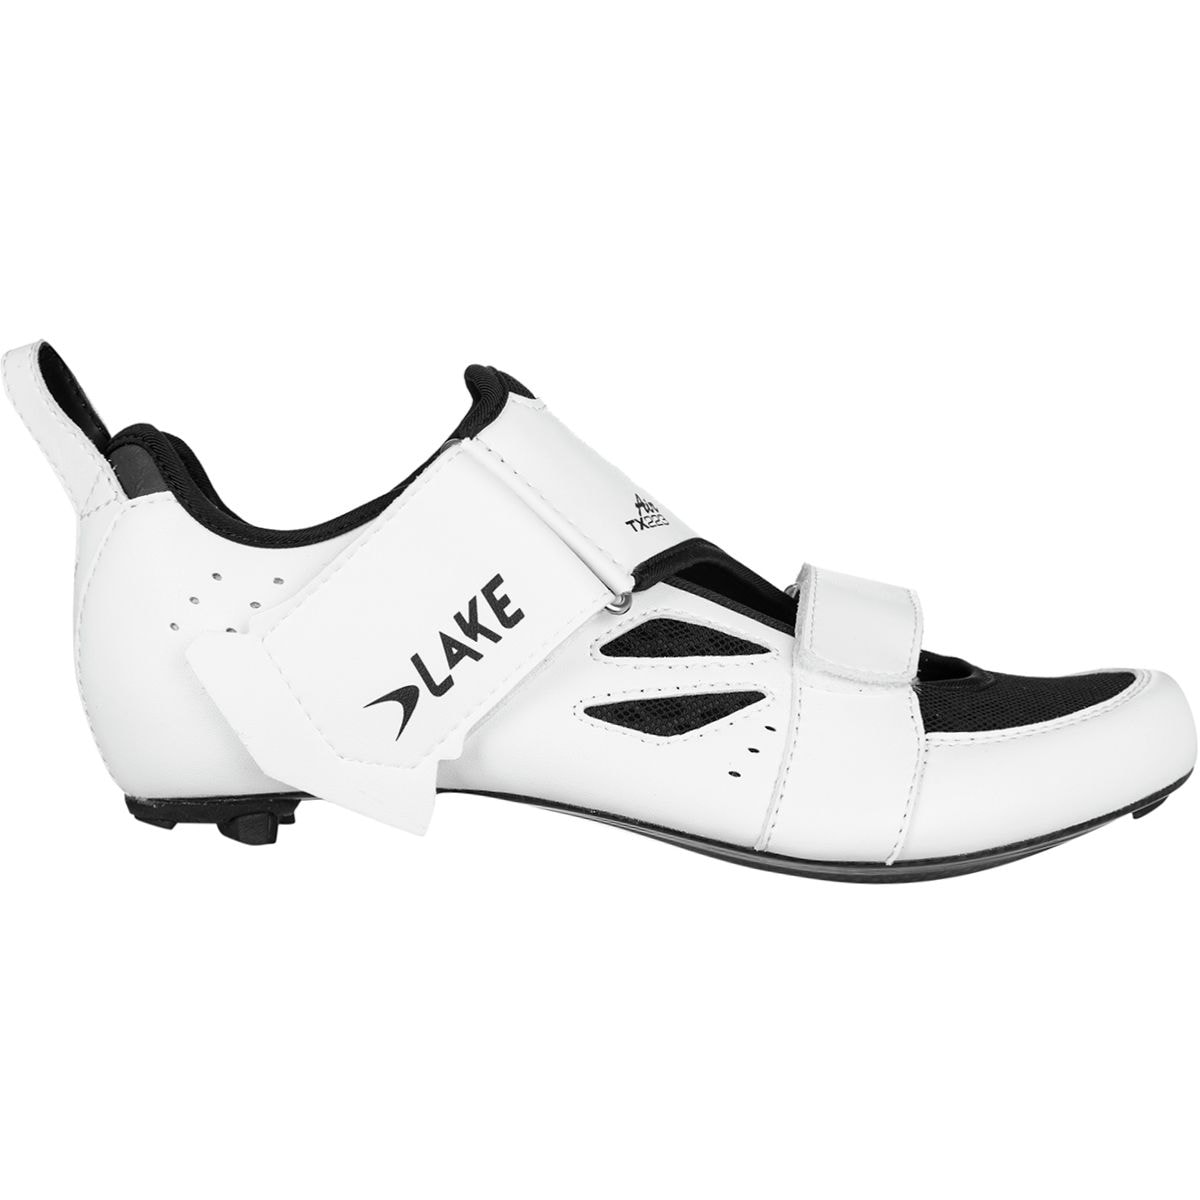 Lake TX223 Tri Shoe - Men's White/Black, 45.5